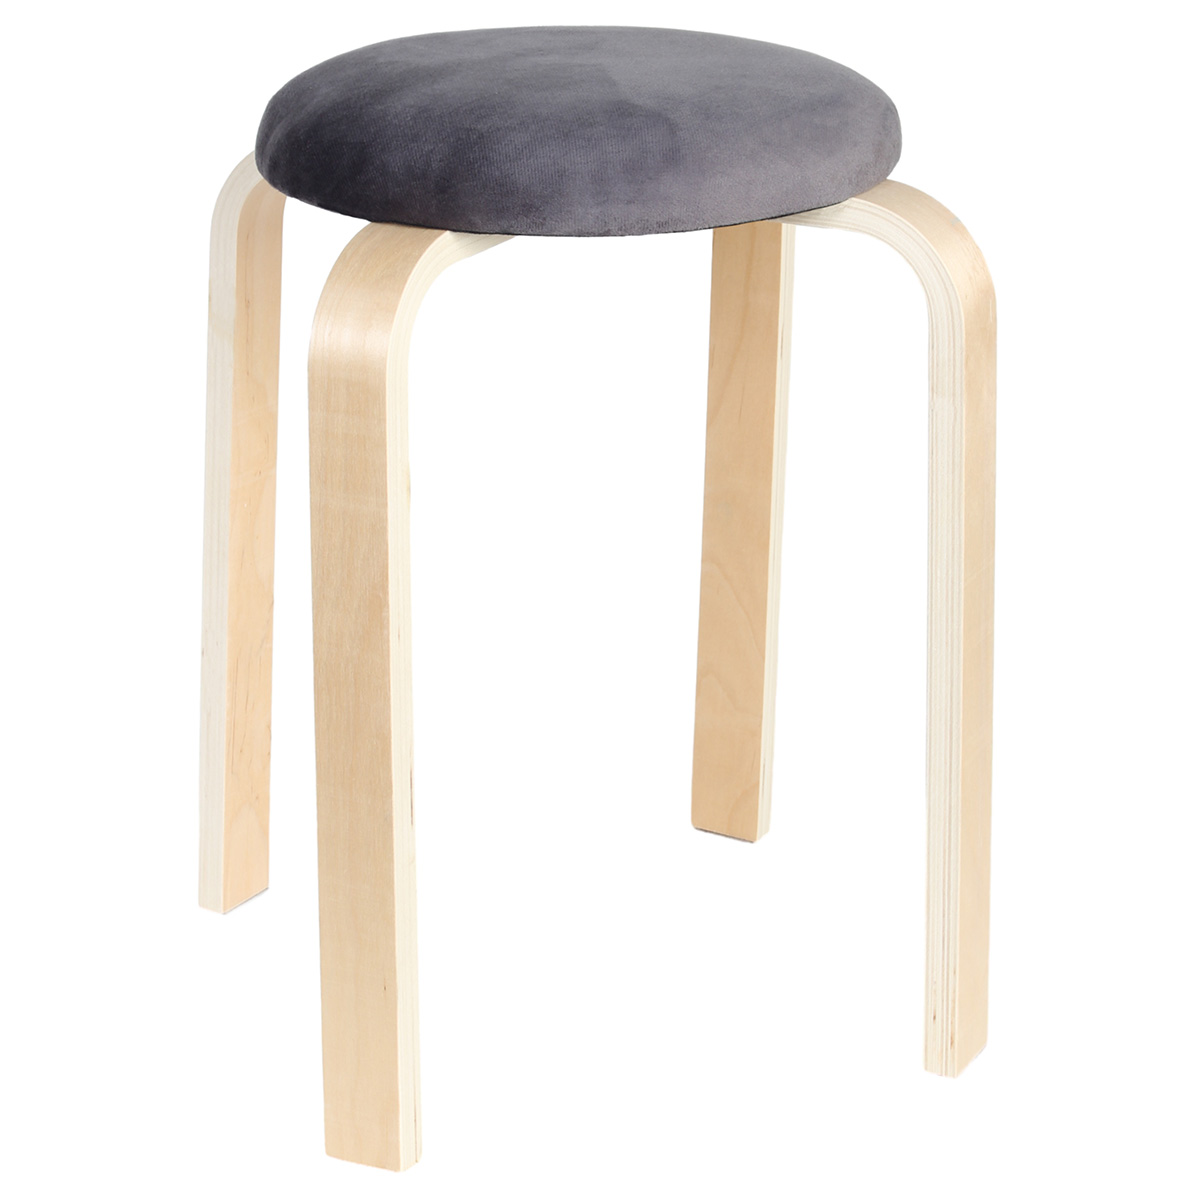 Σκαμπό ξύλινο Φ30Χ48 εκ. με υφασμάτινο κάθισμα βελουτέ γκρι - KESKOR 118733